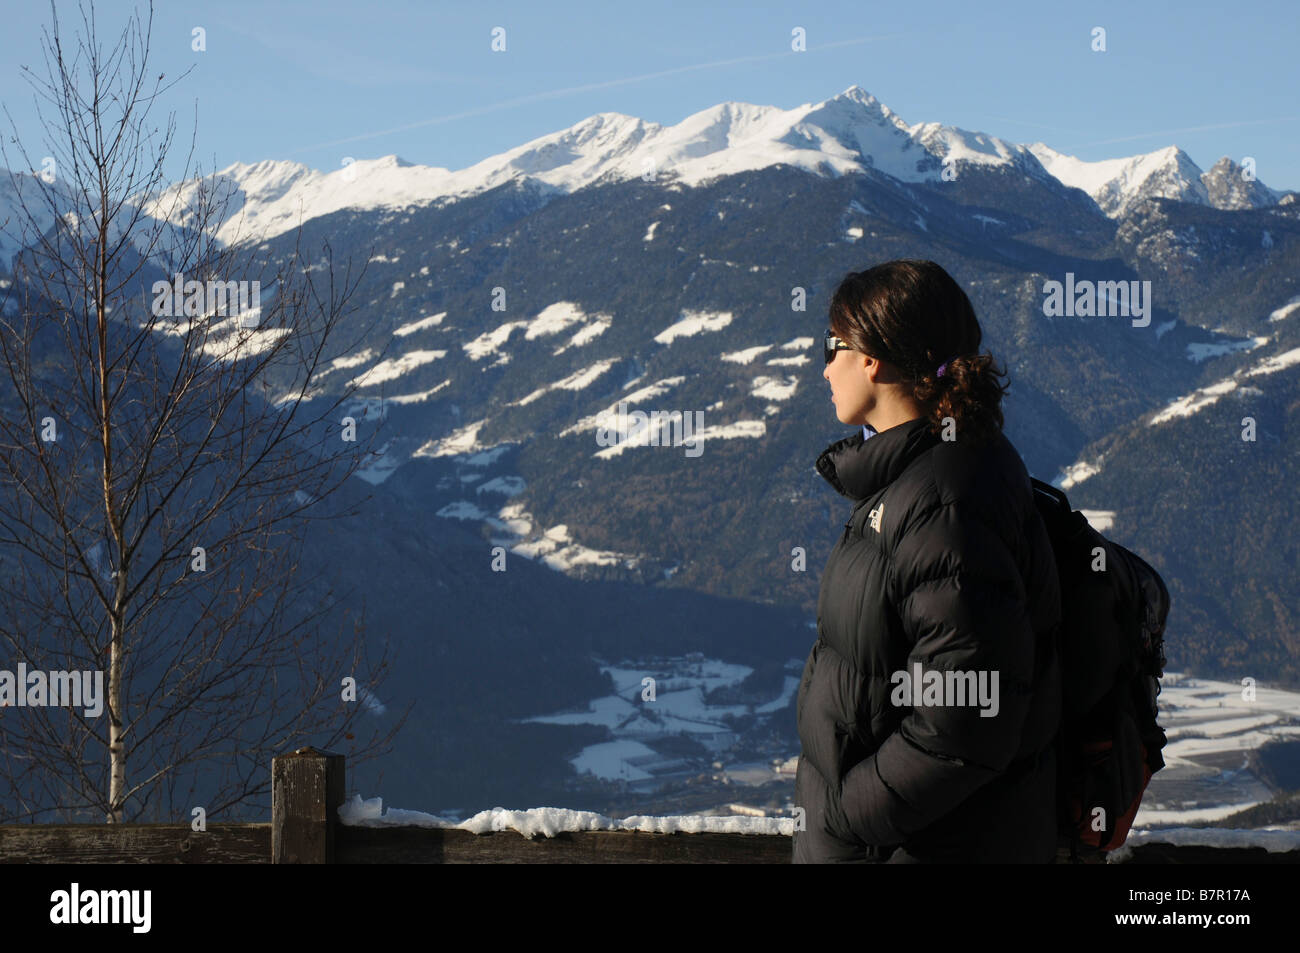 Italia Friuli Venezia Giulia San Leonardo una donna ammirando la vista delle Alpi modello di rilascio disponibili Foto Stock